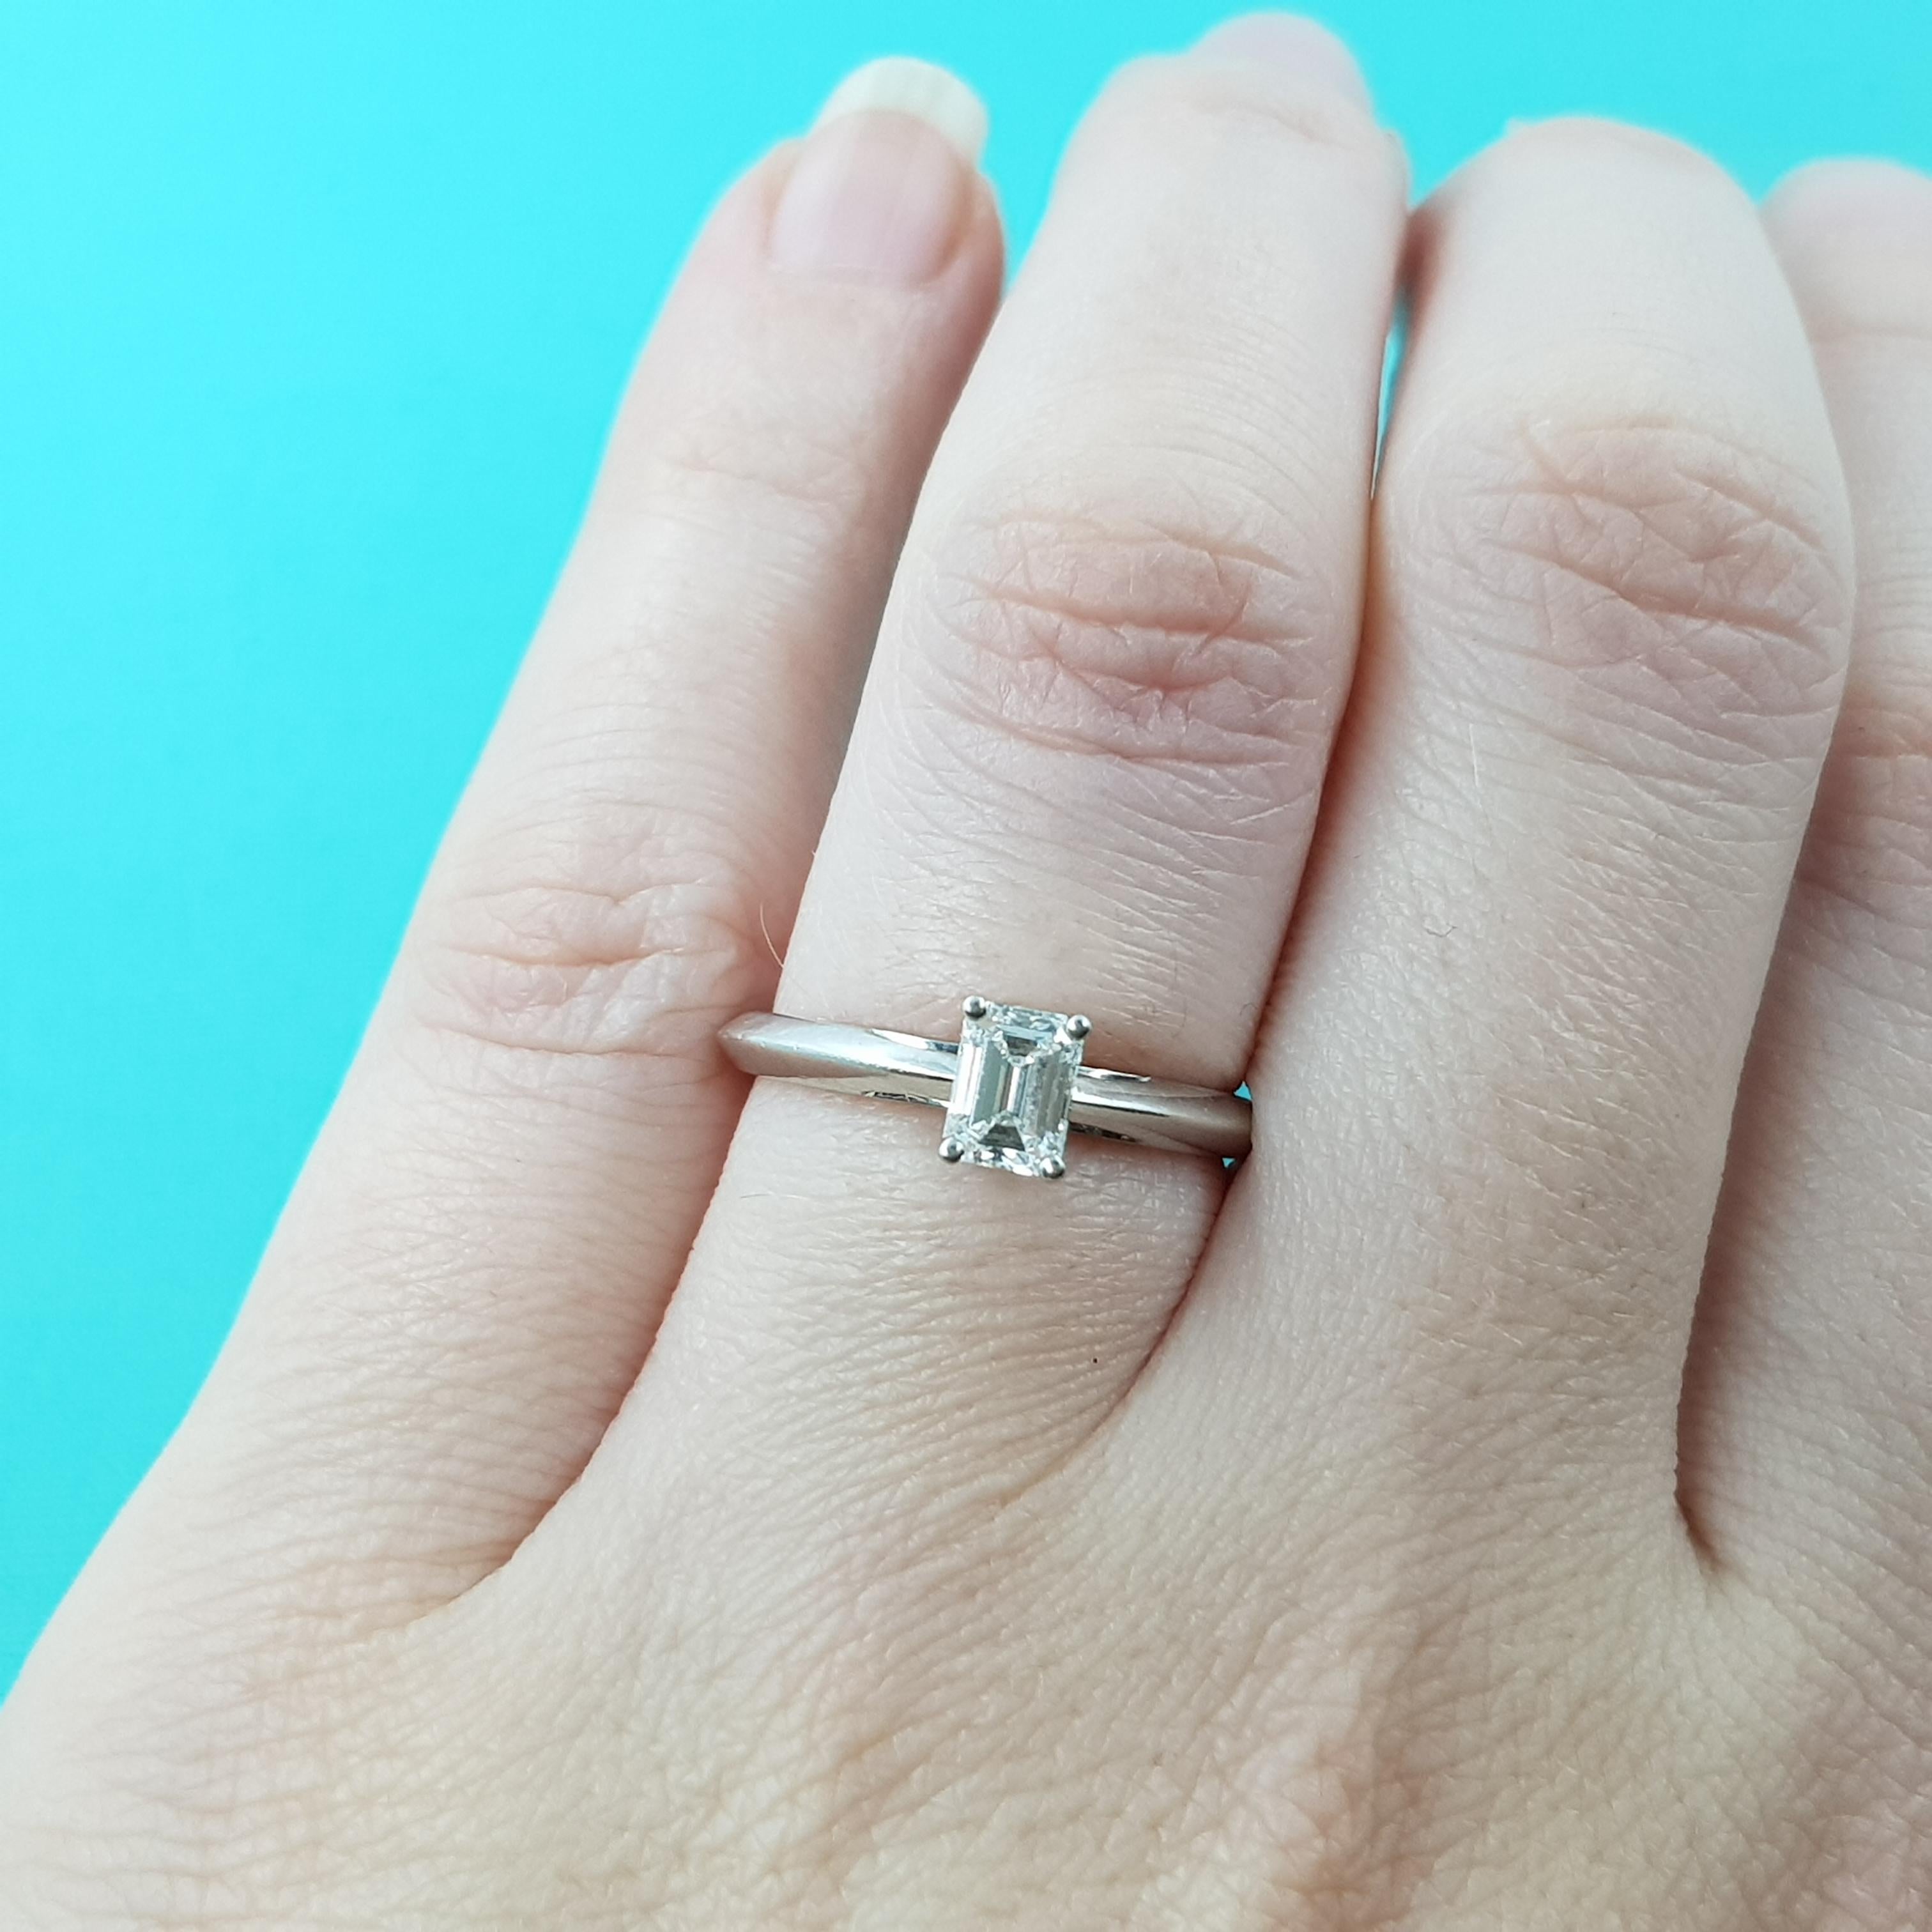 Description : Tiffany & Co 0.46ct E/VVS2 Platinum Solitaire Diamond Ring + Cert & Box #53750

Cette superbe bague solitaire en diamant taille émeraude possède la célèbre qualité Tiffany & Co. qui a fait de la marque un synonyme de haute joaillerie.